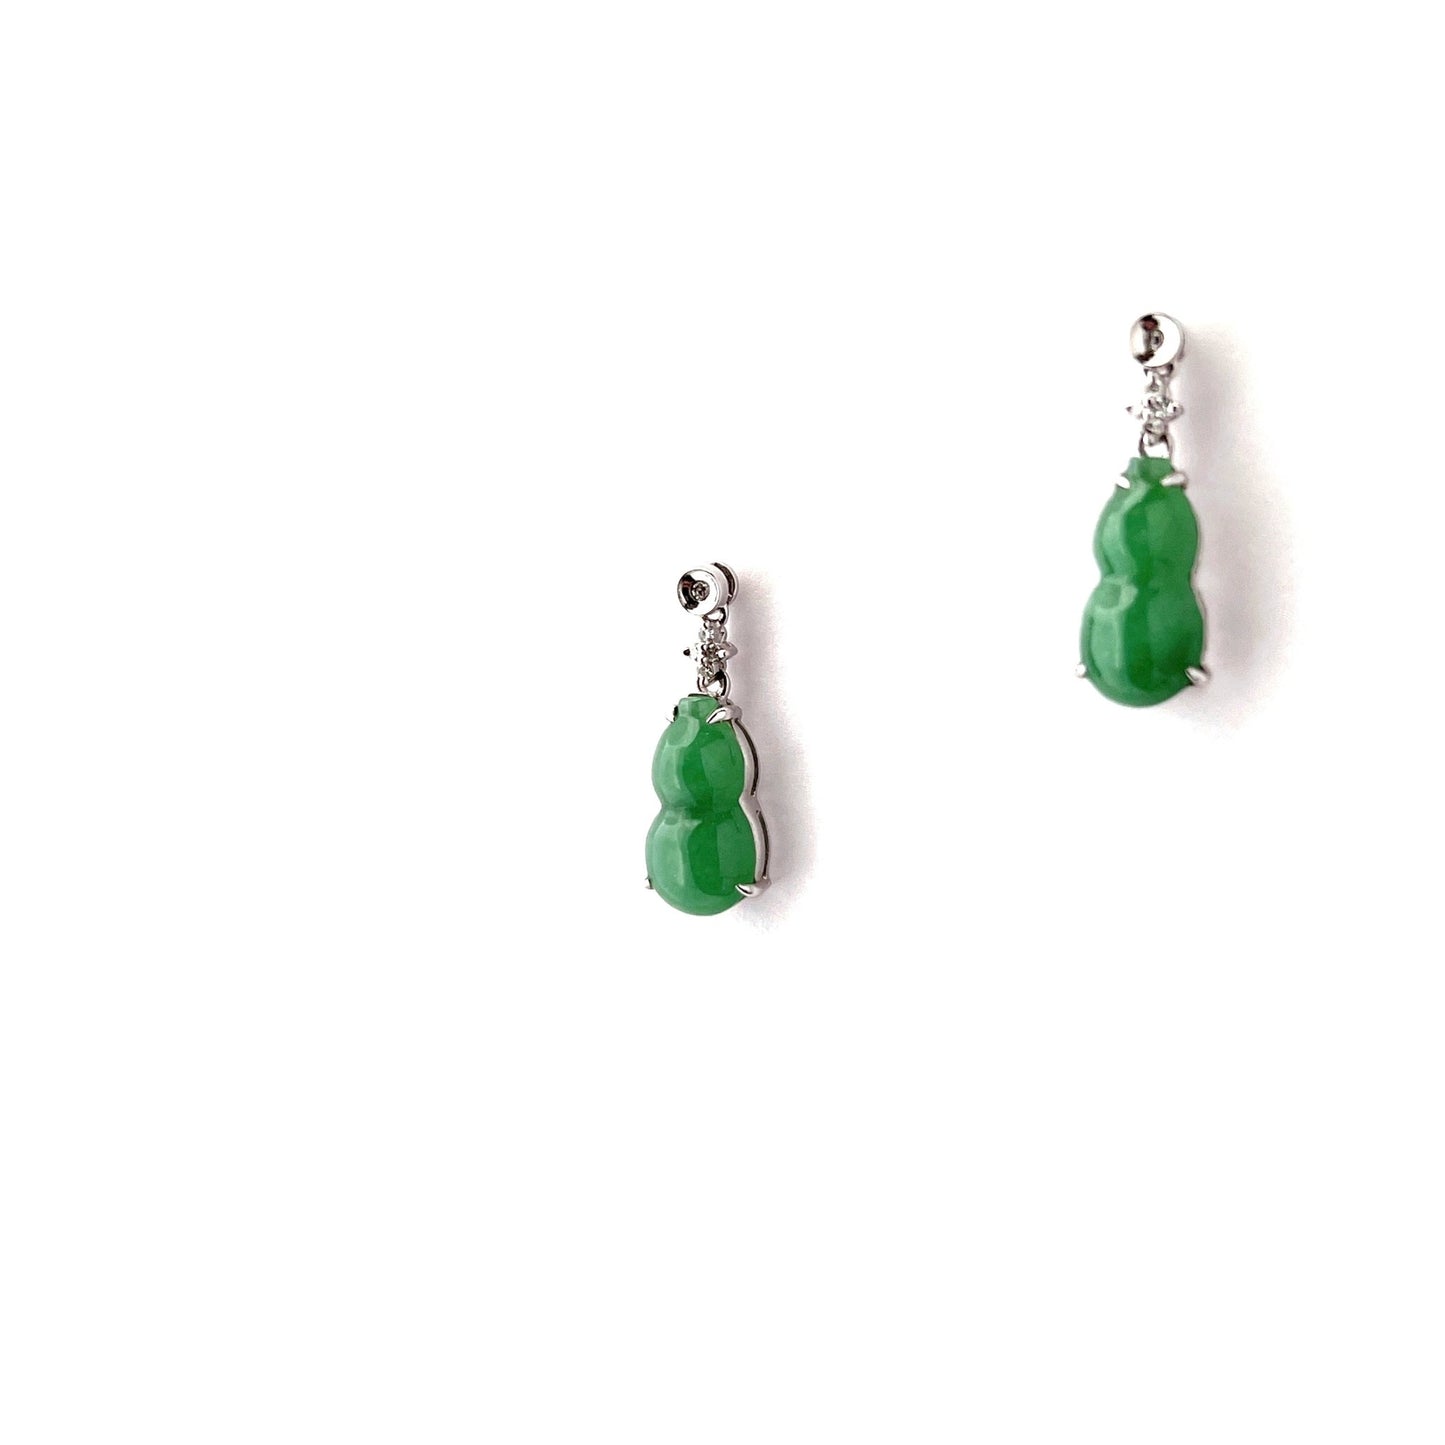 耳環 - 綠色葫蘆雕刻天然翡翠配鑽石拼花18K白色金耳環 - 雅玉珠寶